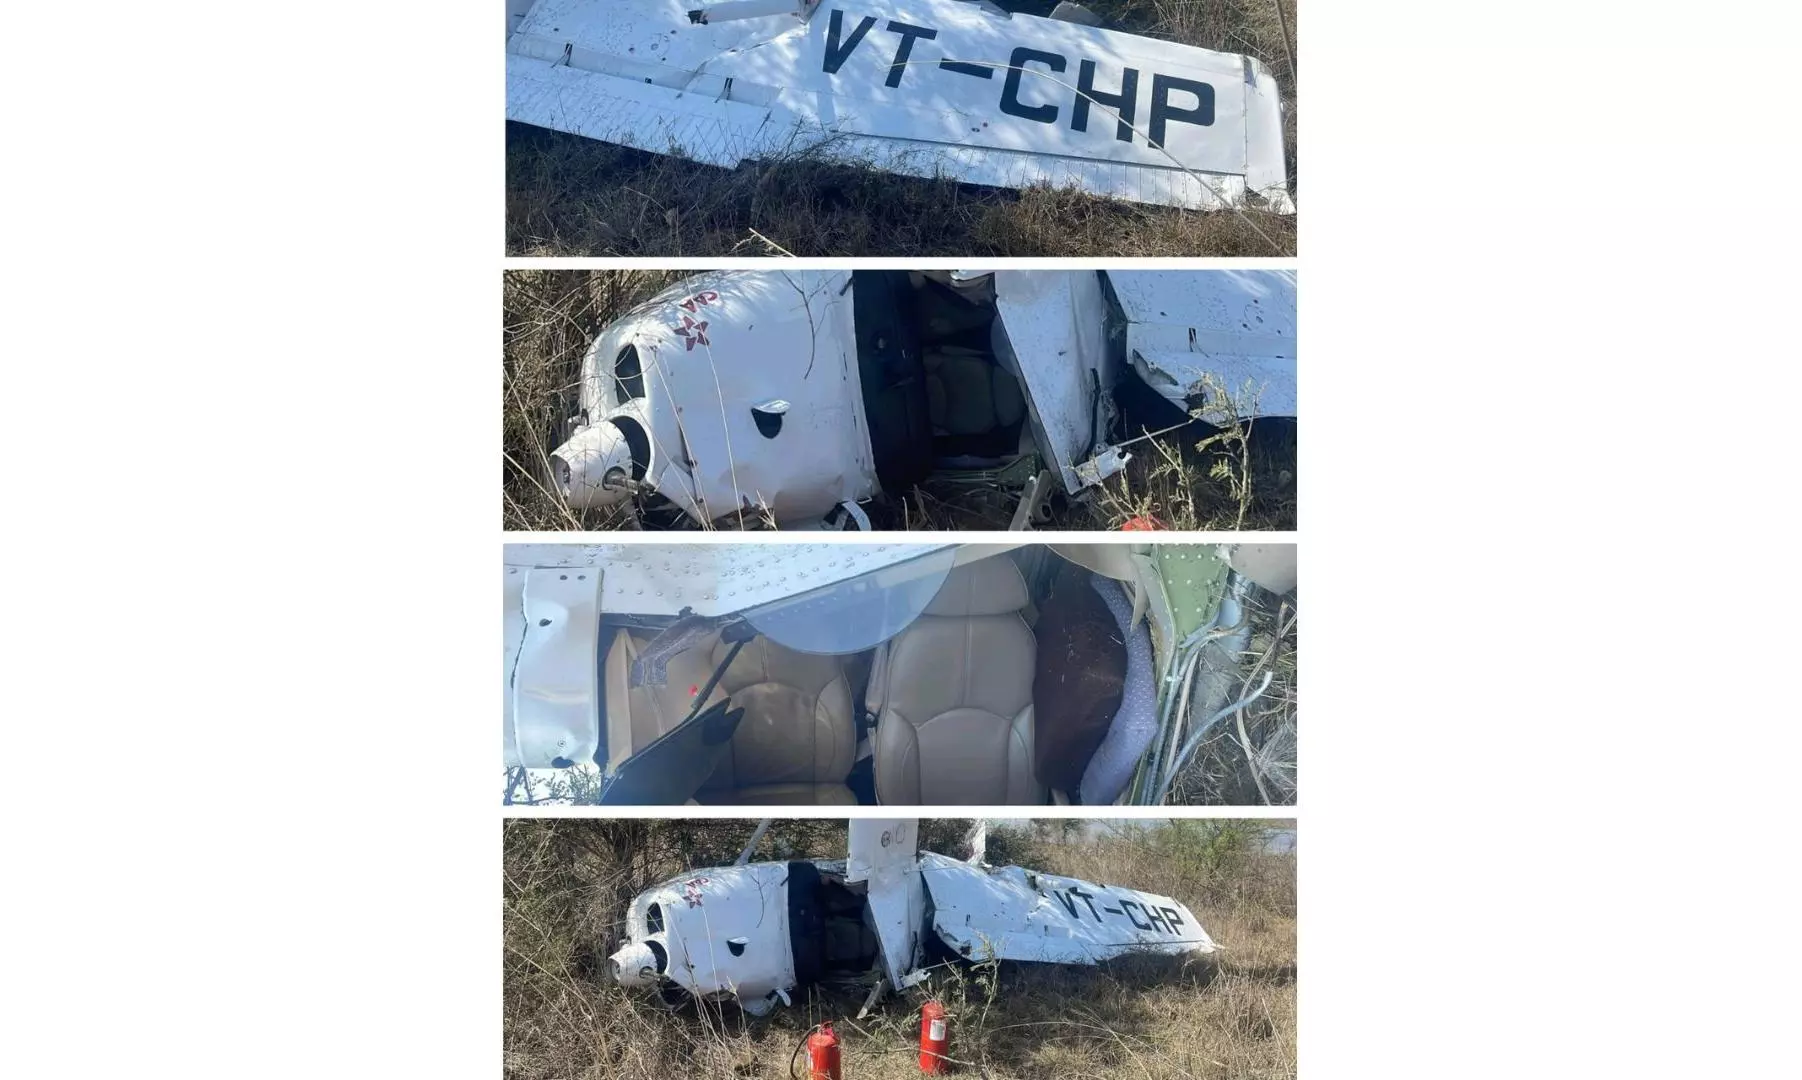 Trainer Aircraft Crashes at Guna Airstrip, Woman Pilot Injured